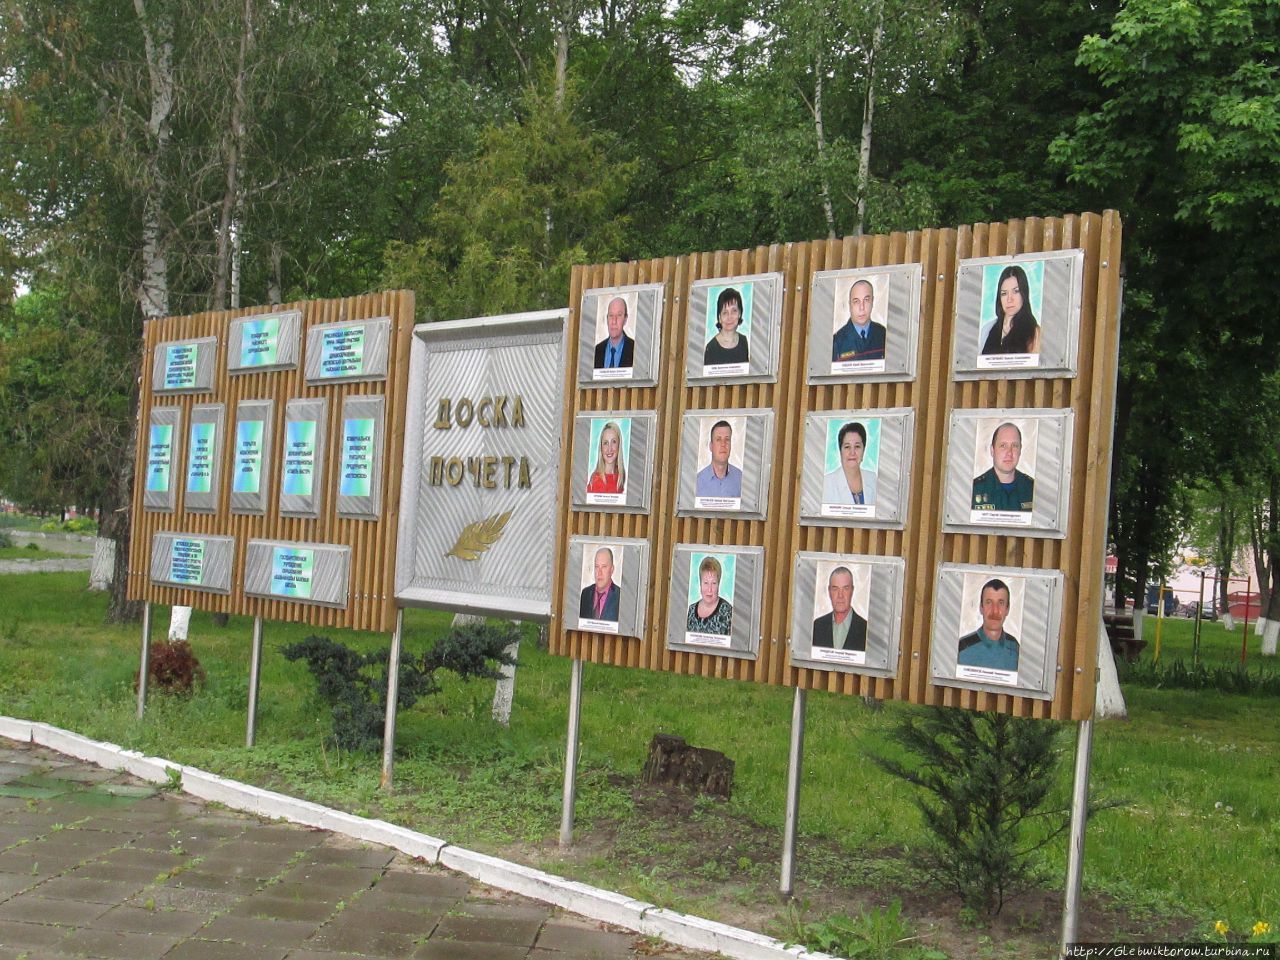 Поездка в Ветку Ветка, Беларусь